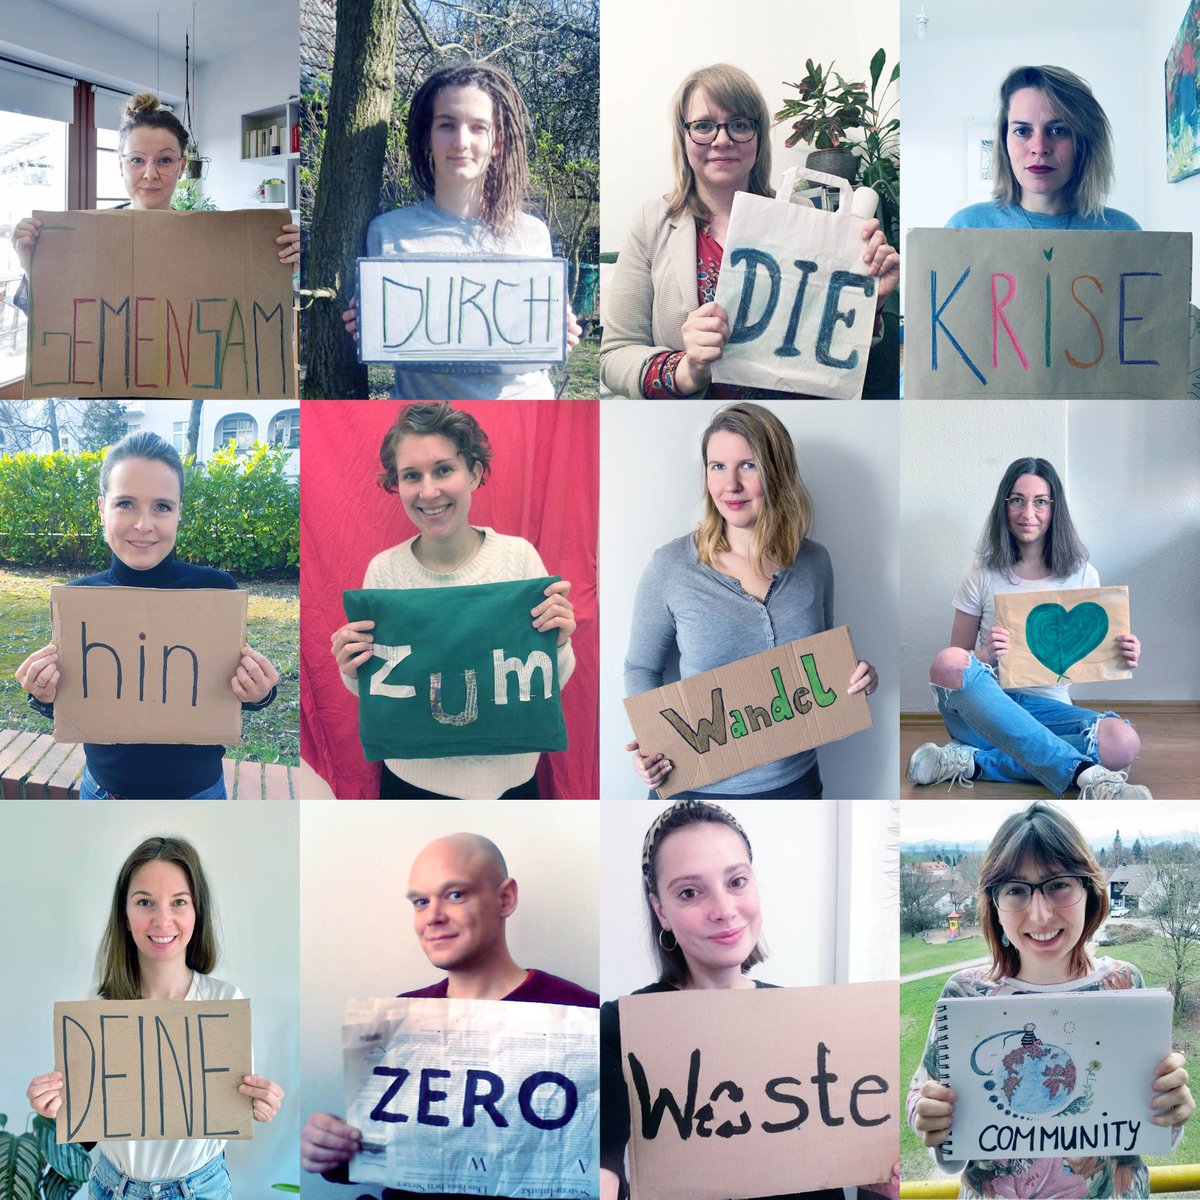 #Gemeinsam durch die #Krise – hin zum #Wandel 💚 Deine Zero Waste #Community

#zerowaste #corona #virus #wirbleibenzuhaus #SystemChange #Nachhaltigkeit #Umwelt #Zukunft #socialchange